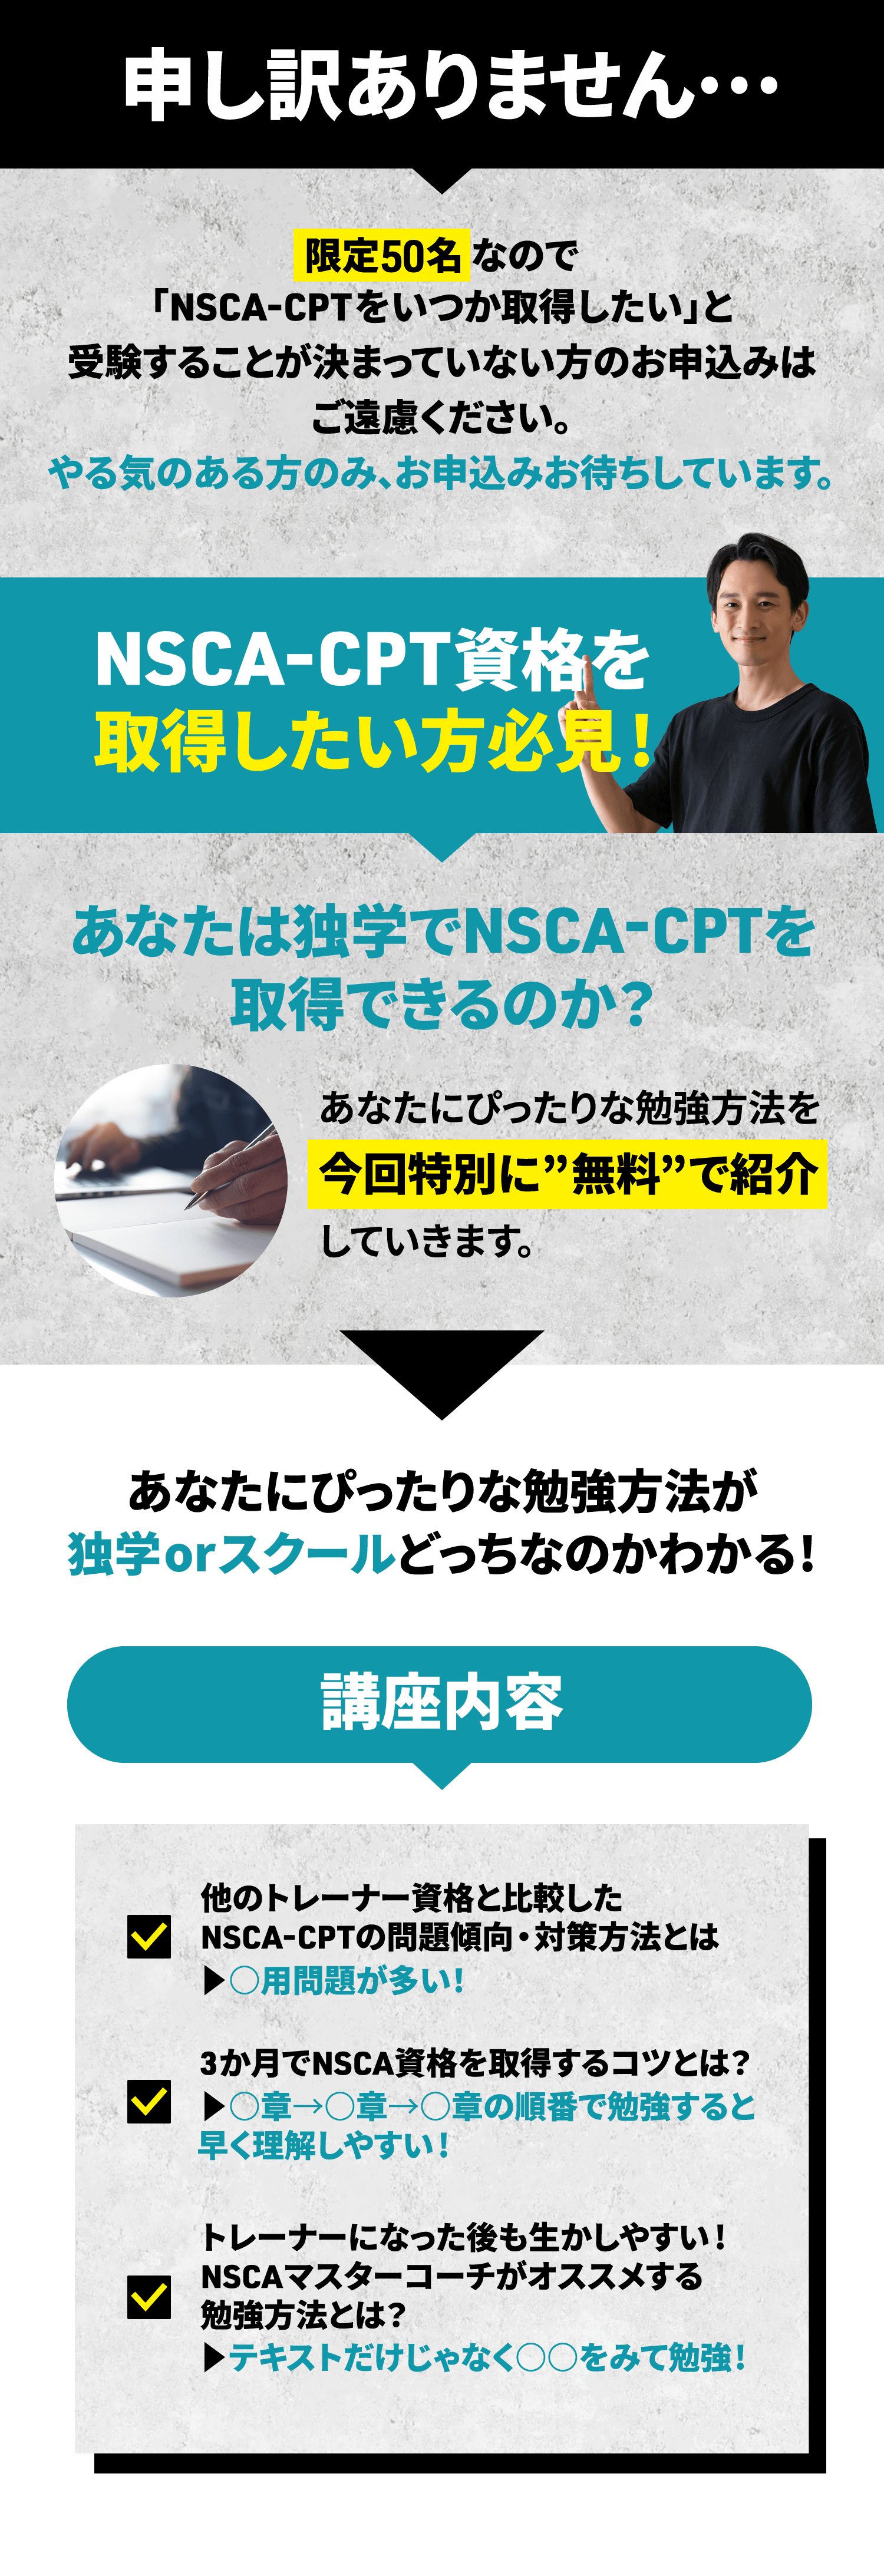 NSCA-CPT資格を取得したい方必見!